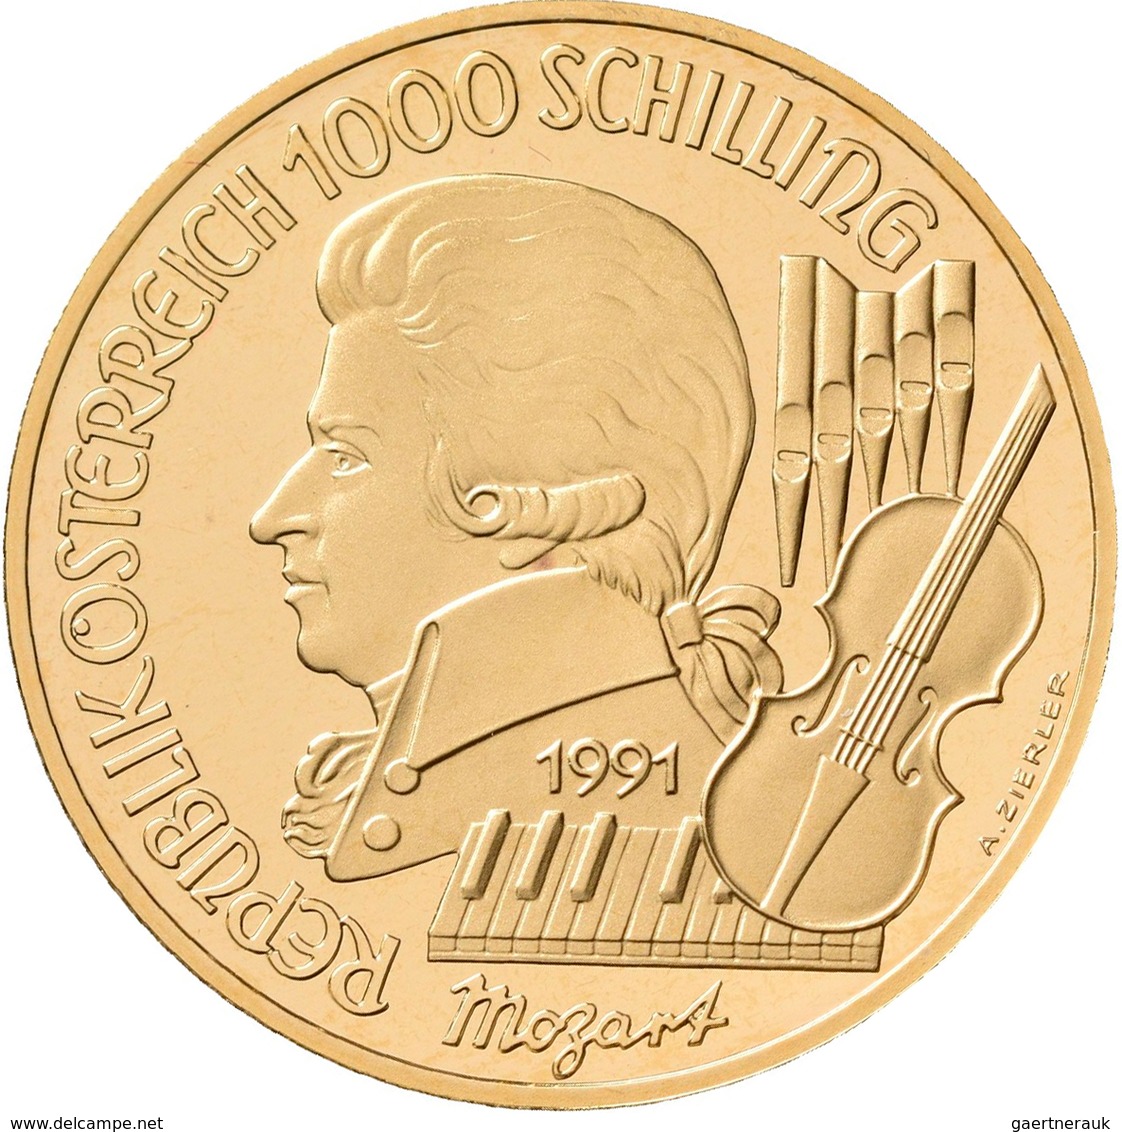 Österreich - Anlagegold: 2. Republik Ab 1945: Lot 2 Goldmünzen, Serie Wolfgang Amadeus Mozart 1991: - Austria